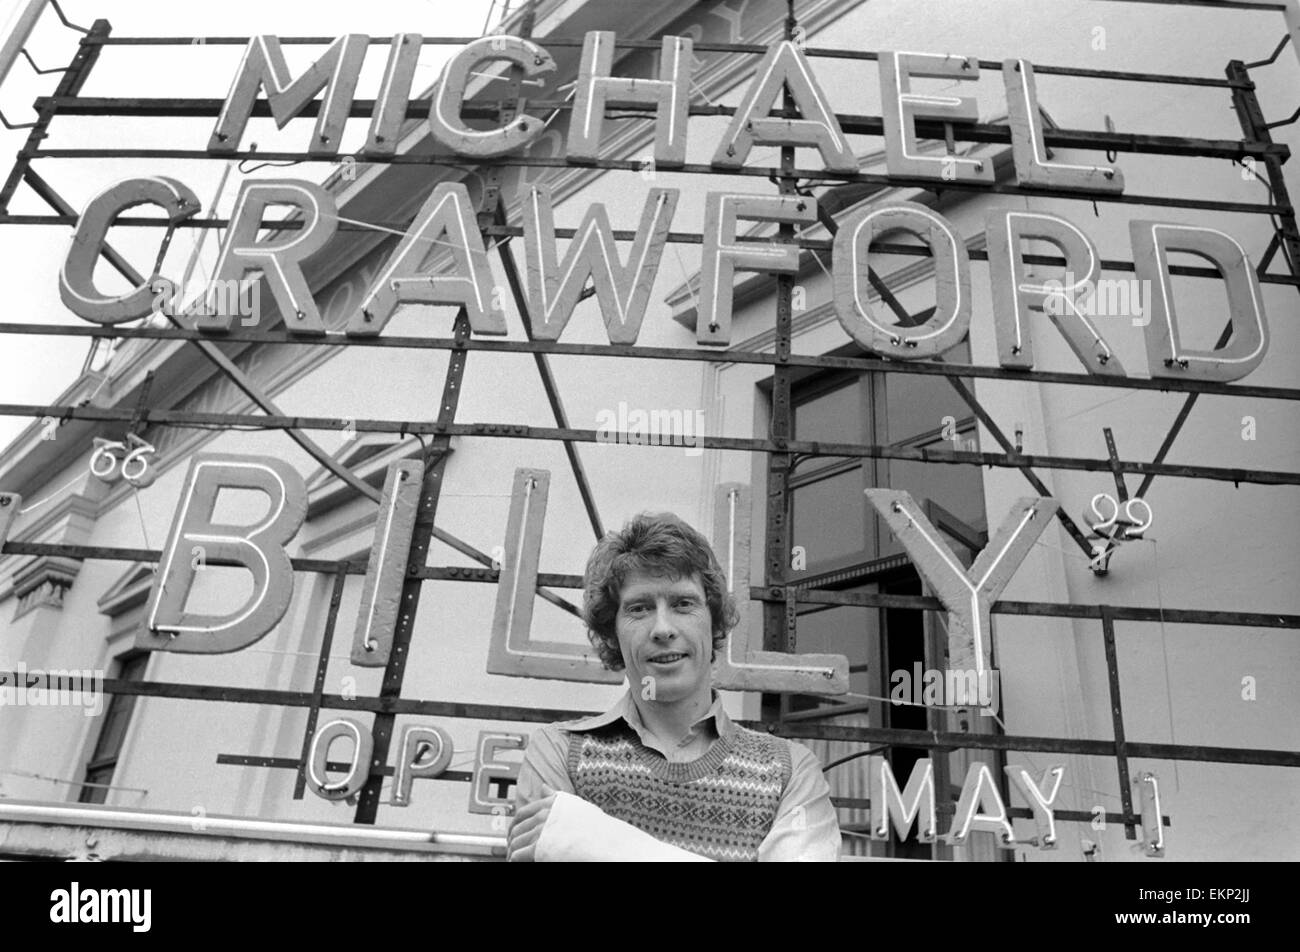 L'acteur Michael Crawford qui prend l'initiative de 'Billy' une comédie musicale basée sur les 'BILLY MENTEUR' a son nom dans les lumières à la Théâtre de Drury Lane. Dans l'intervalle, il est l'allaitement d'un bras cassé. Avril 1974 74-2470-002 Banque D'Images